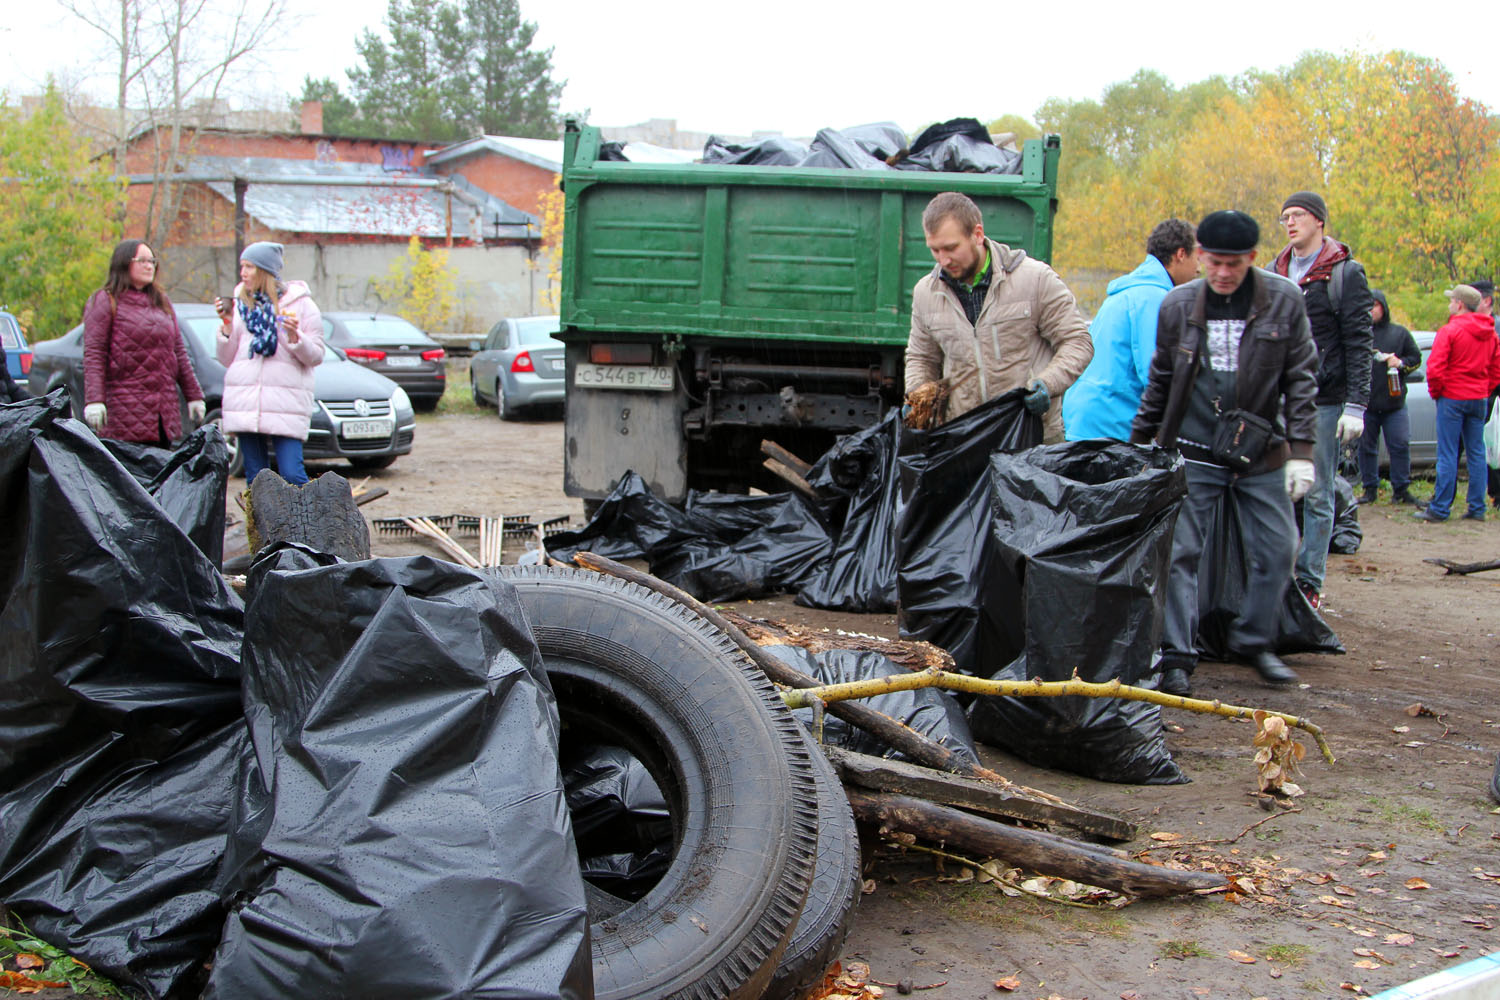 Молодежь СХК организовала спортивный сбор мусора у памятника войнам ВОВ